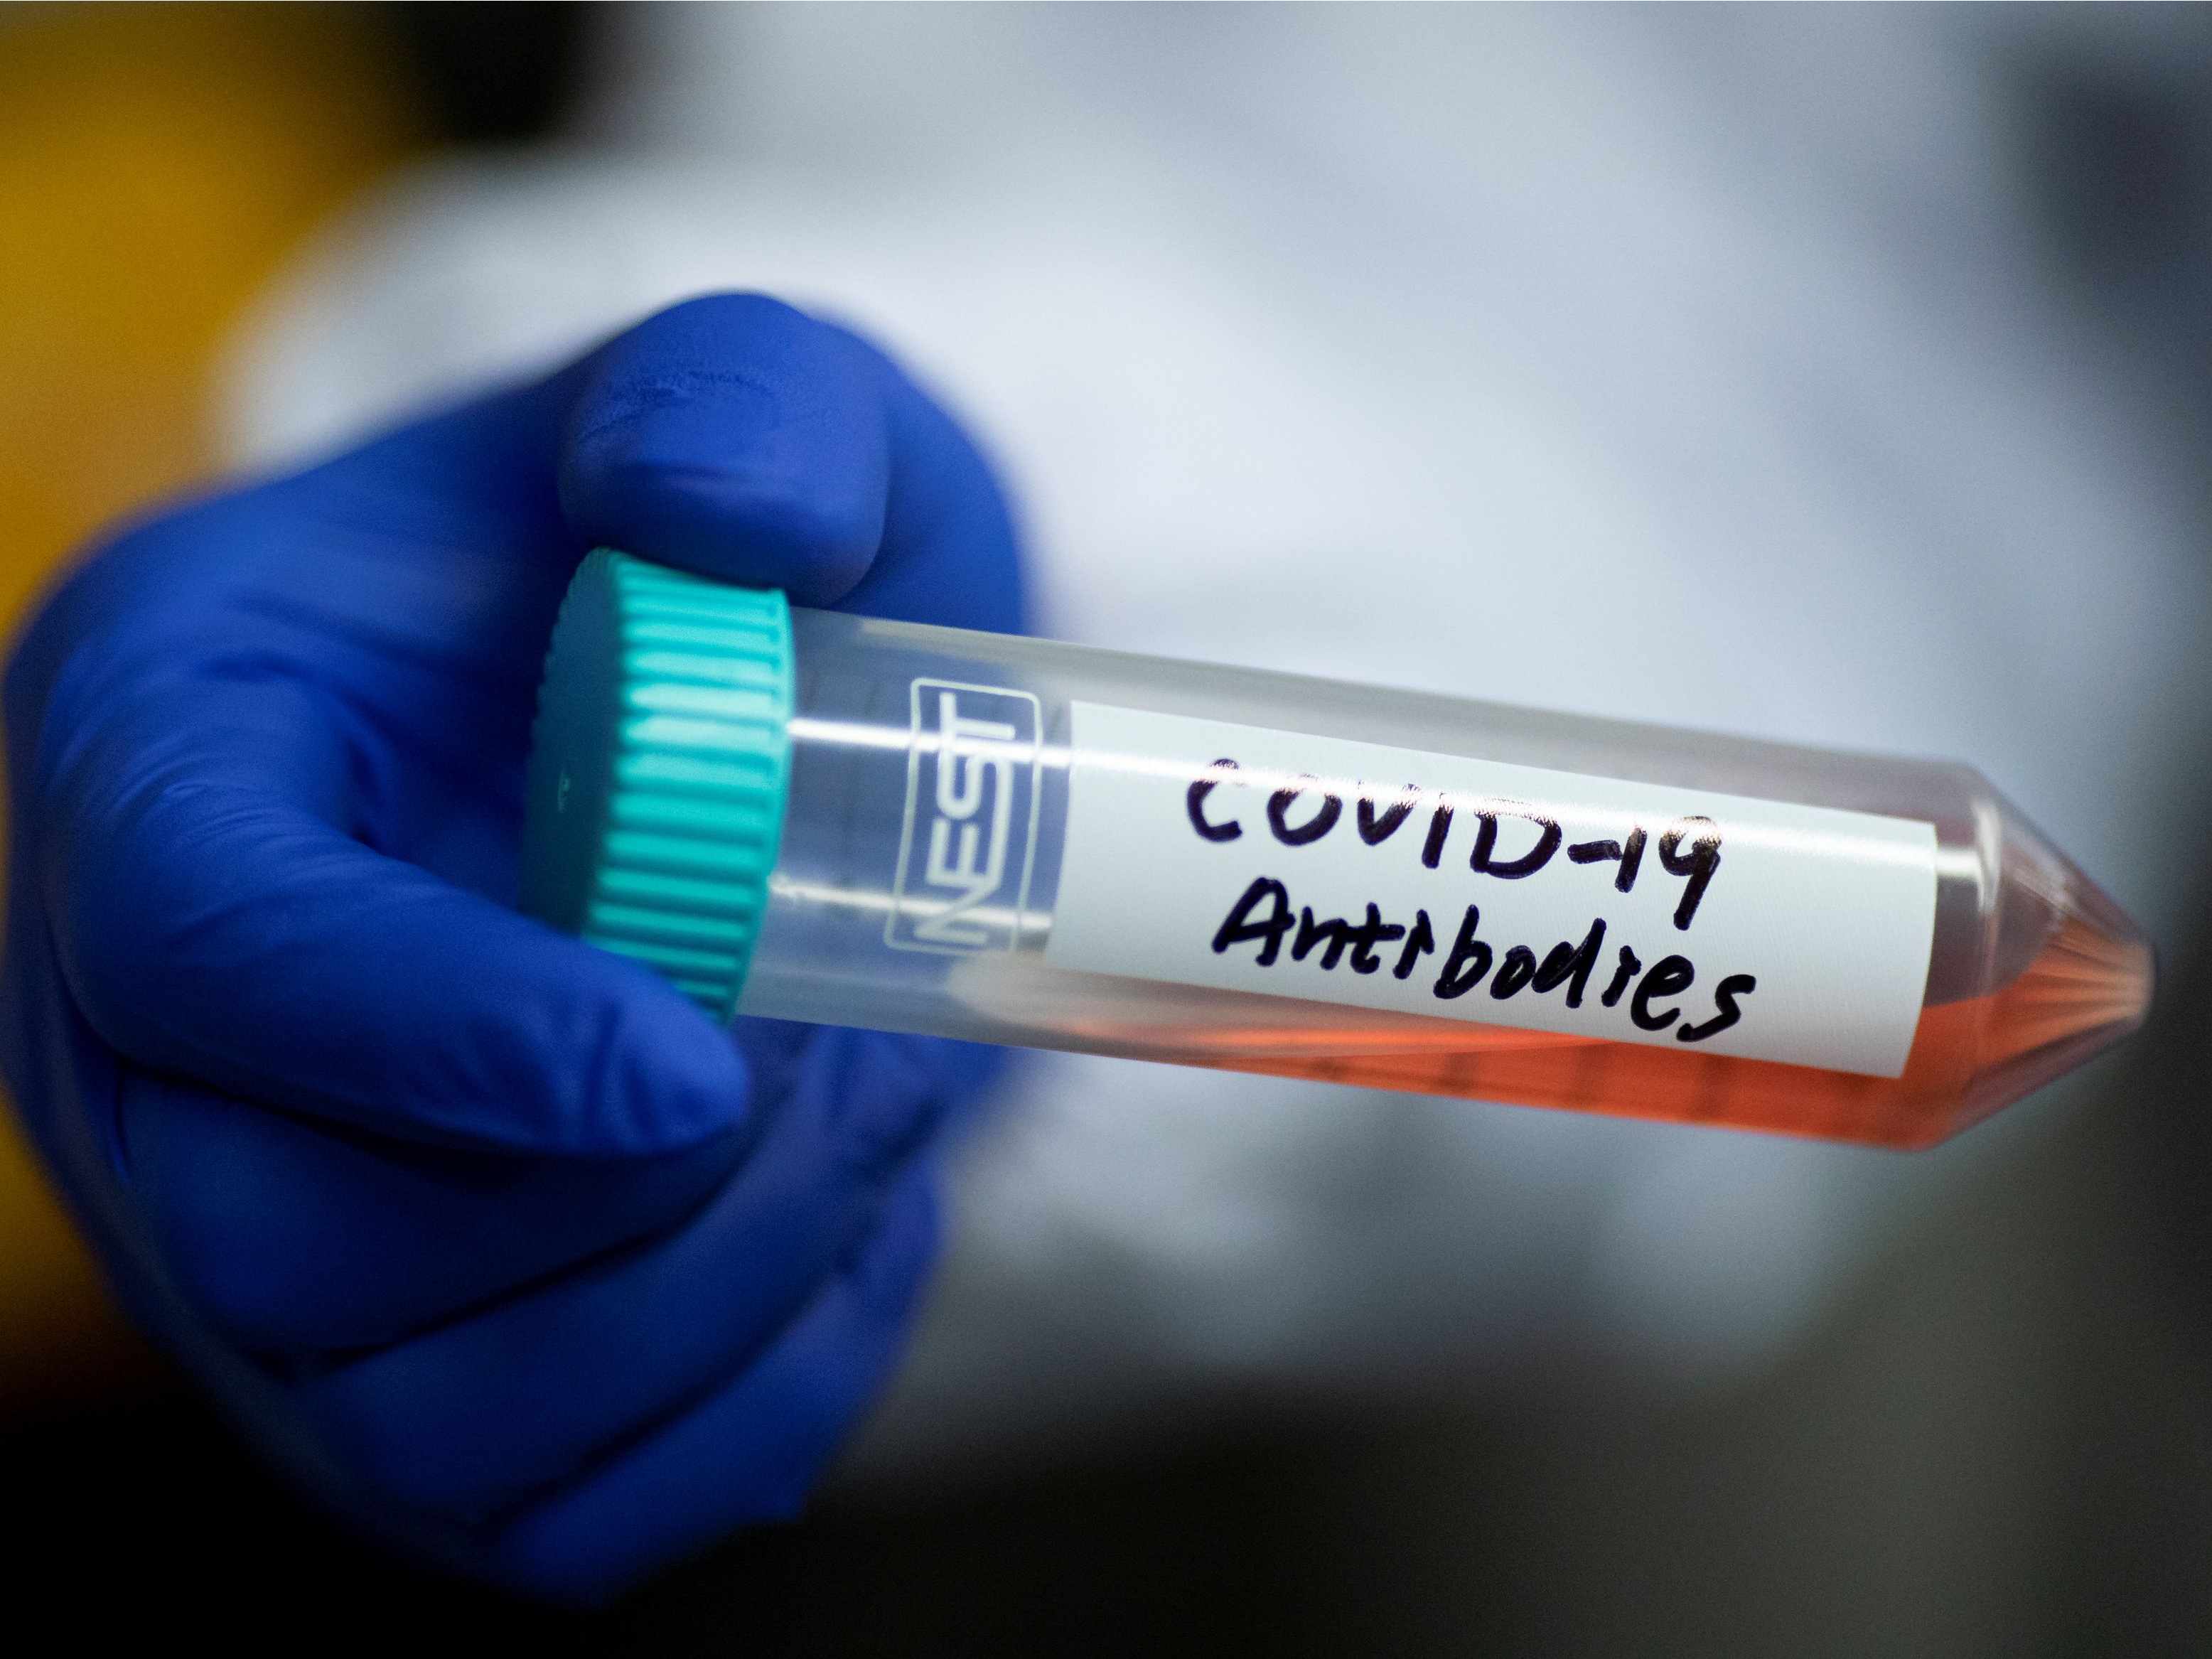 Wetenschappers zijn nog volop bezig om vragen rond immuniteit tegen het coronavirus te beantwoorden. Zo moet er meer duidelijkheid komen over de vraag of mensen die besmet zijn geweest opnieuw ziek kunnen worden, en hoelang je immuun blijft als je Covid-19 hebt gehad.